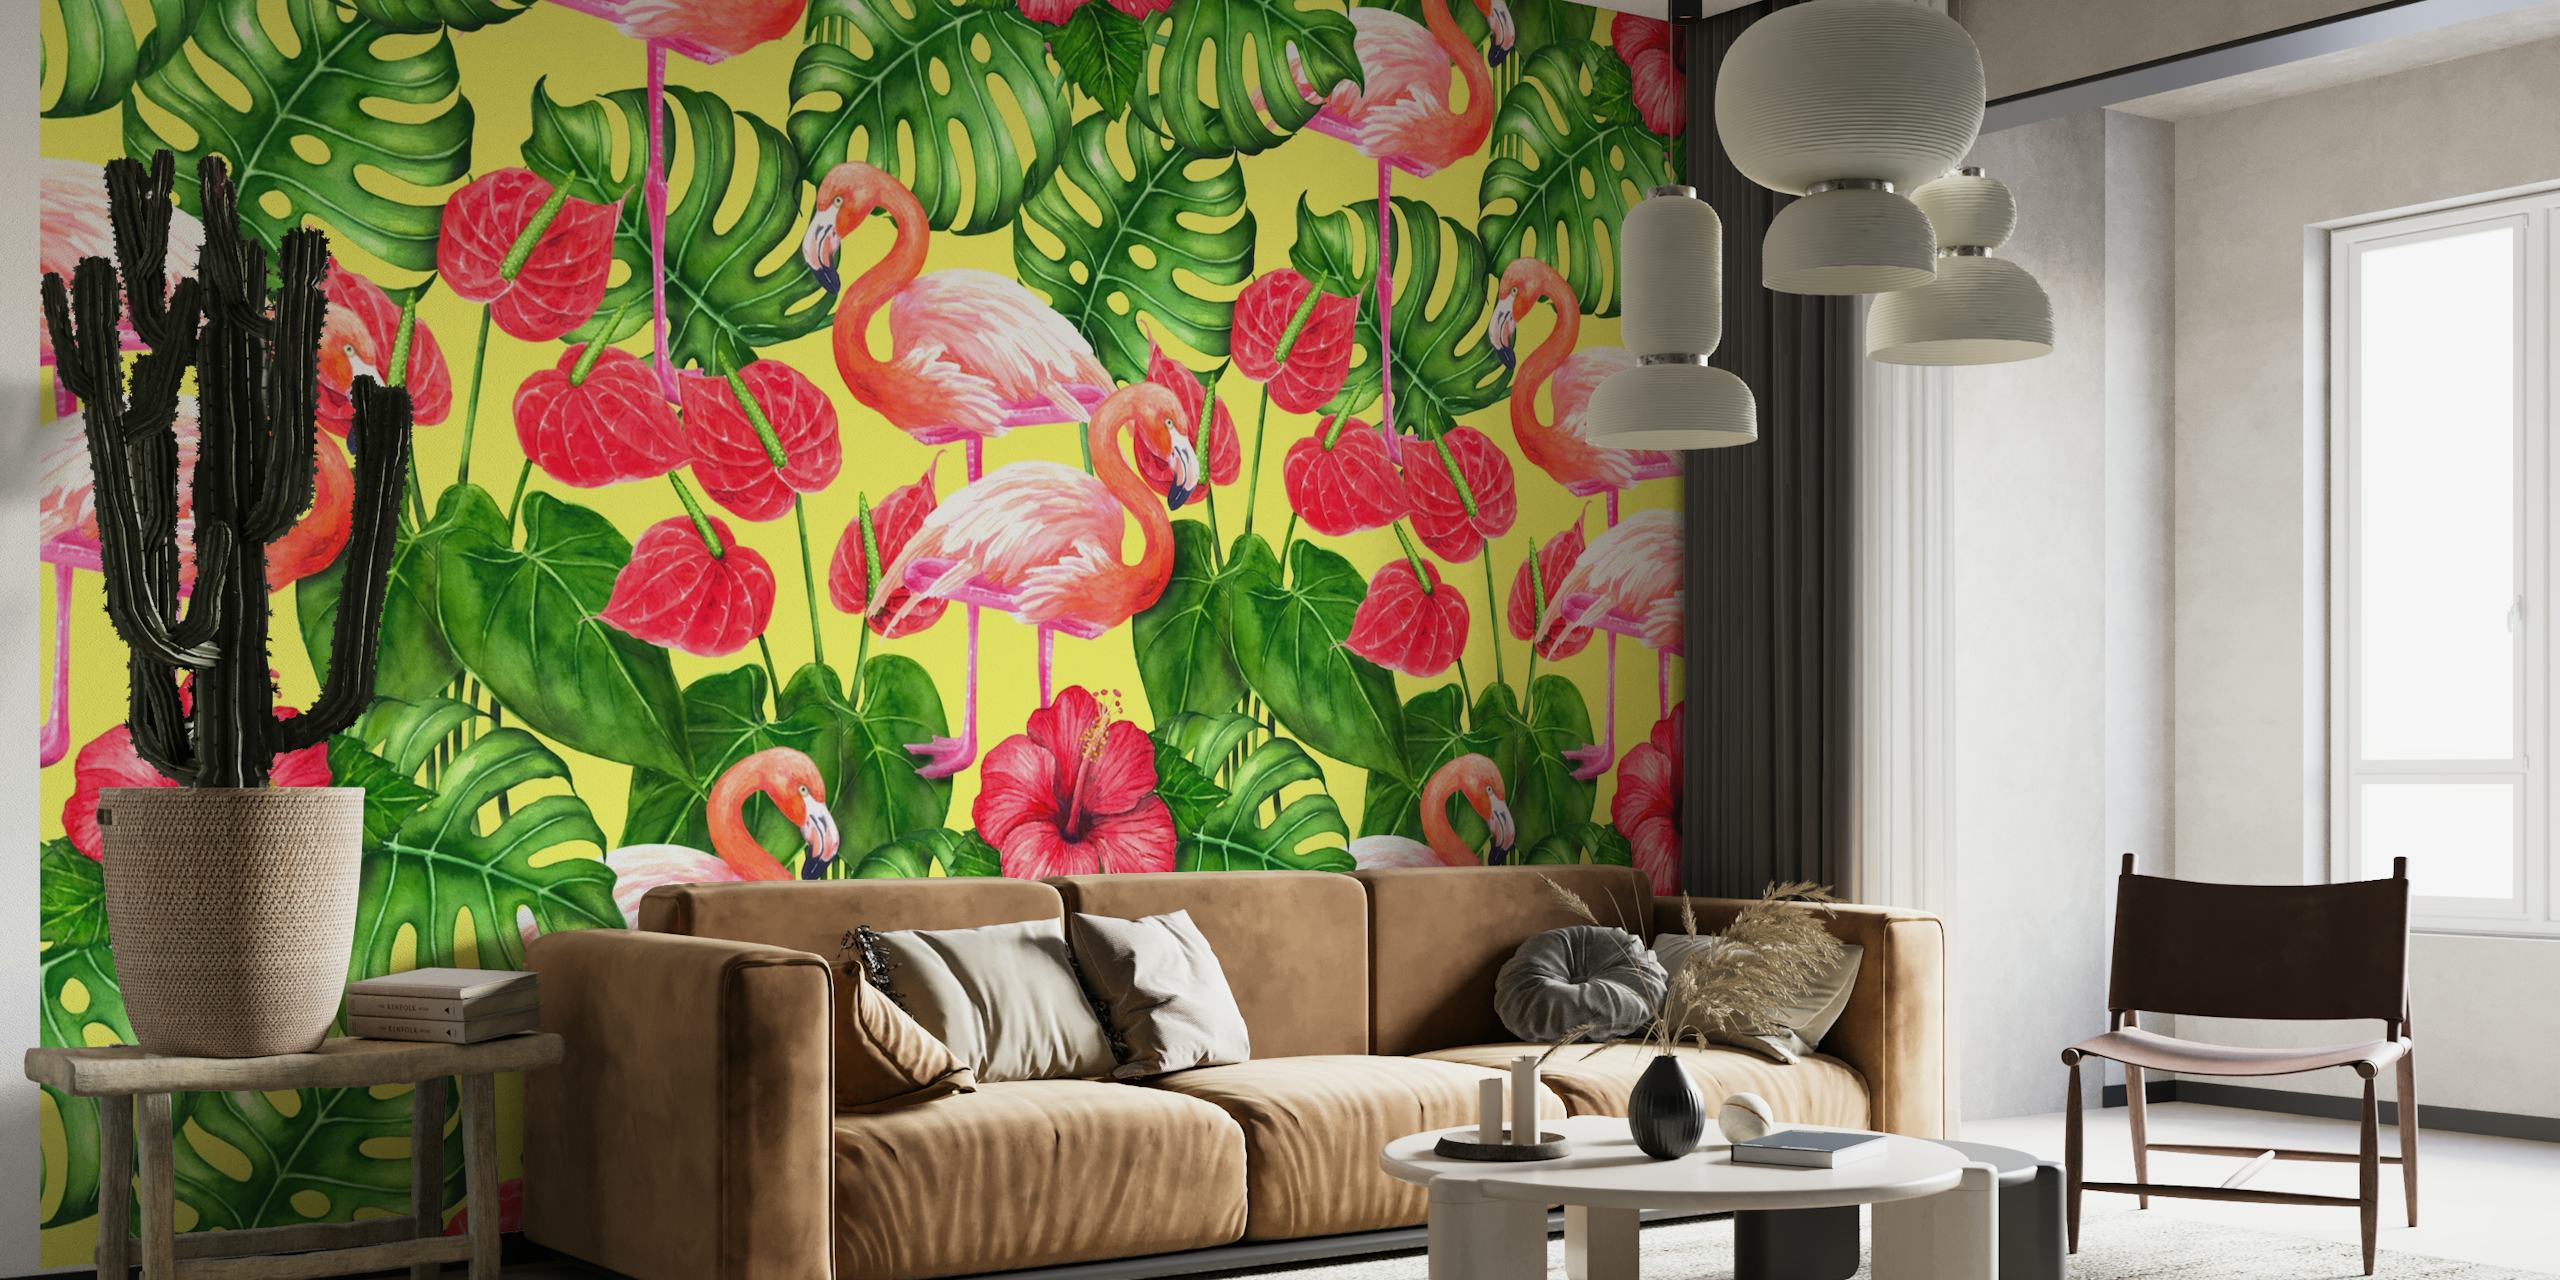 Flamingo and tropical garden 2 wallpaper